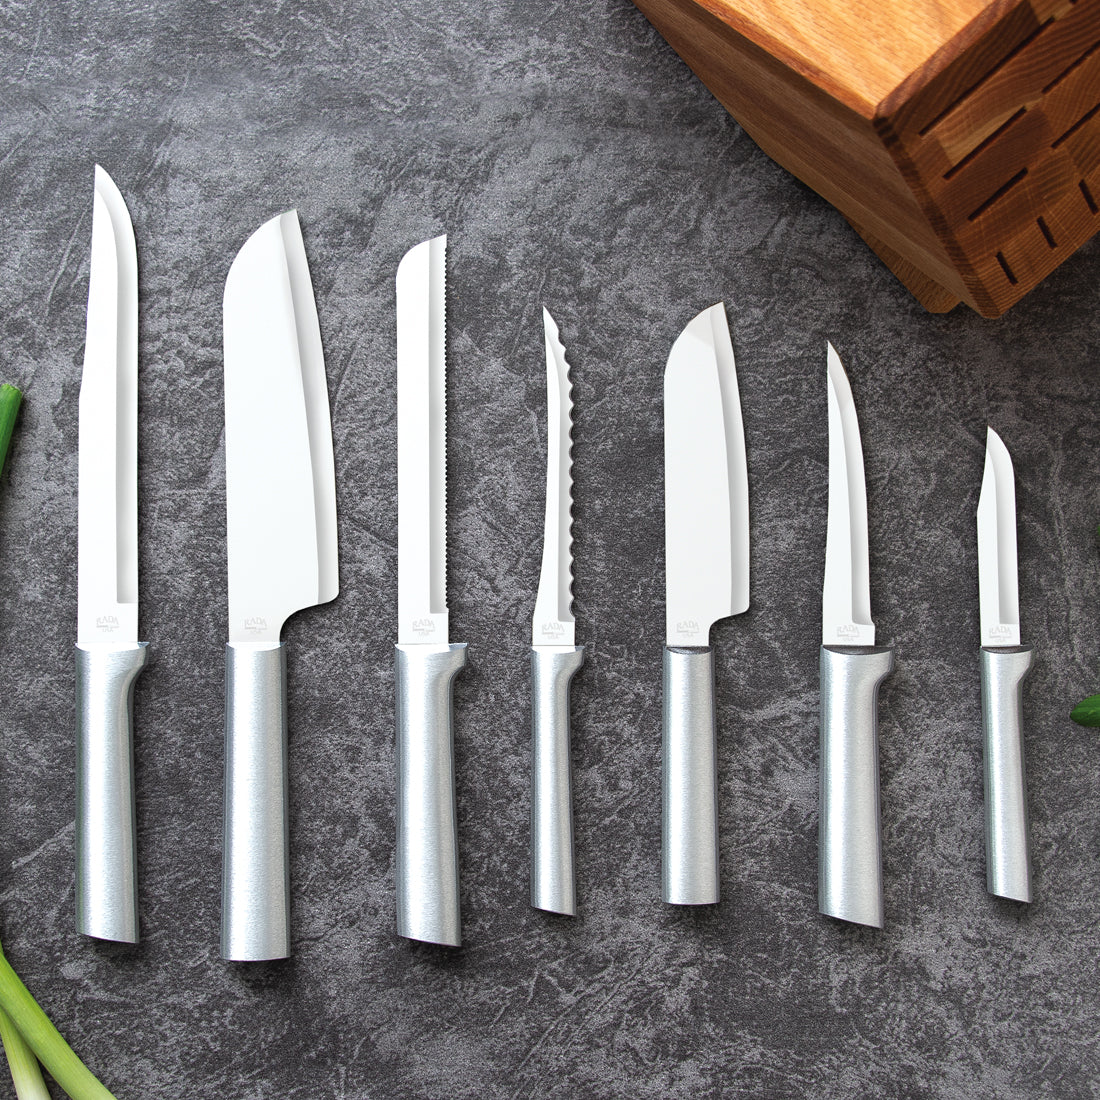 Rada Essential Oak Block Set of 8 Black Handled Knives with Knife Sharpener